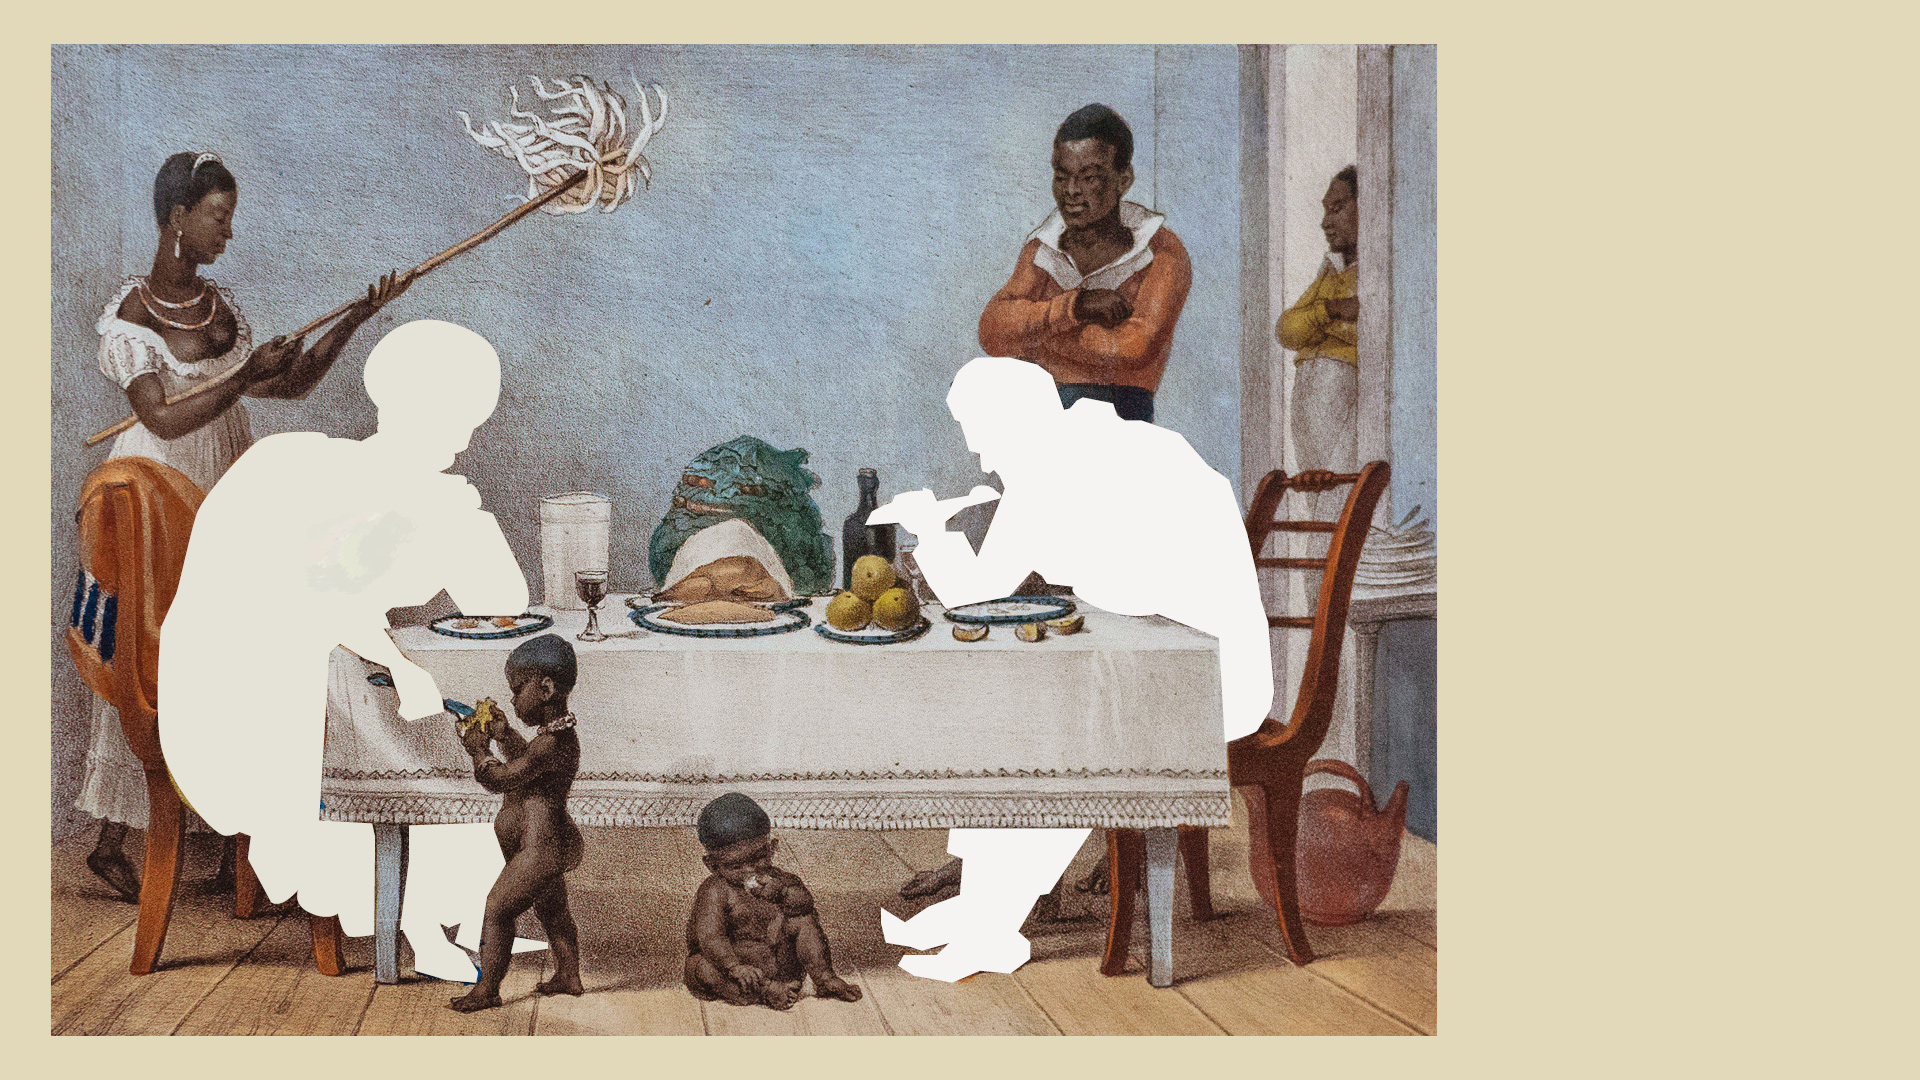 gravura de Jean-Baptiste Debret sobre a vida no Brasil colonial com as figuras brancas retiradas de cena